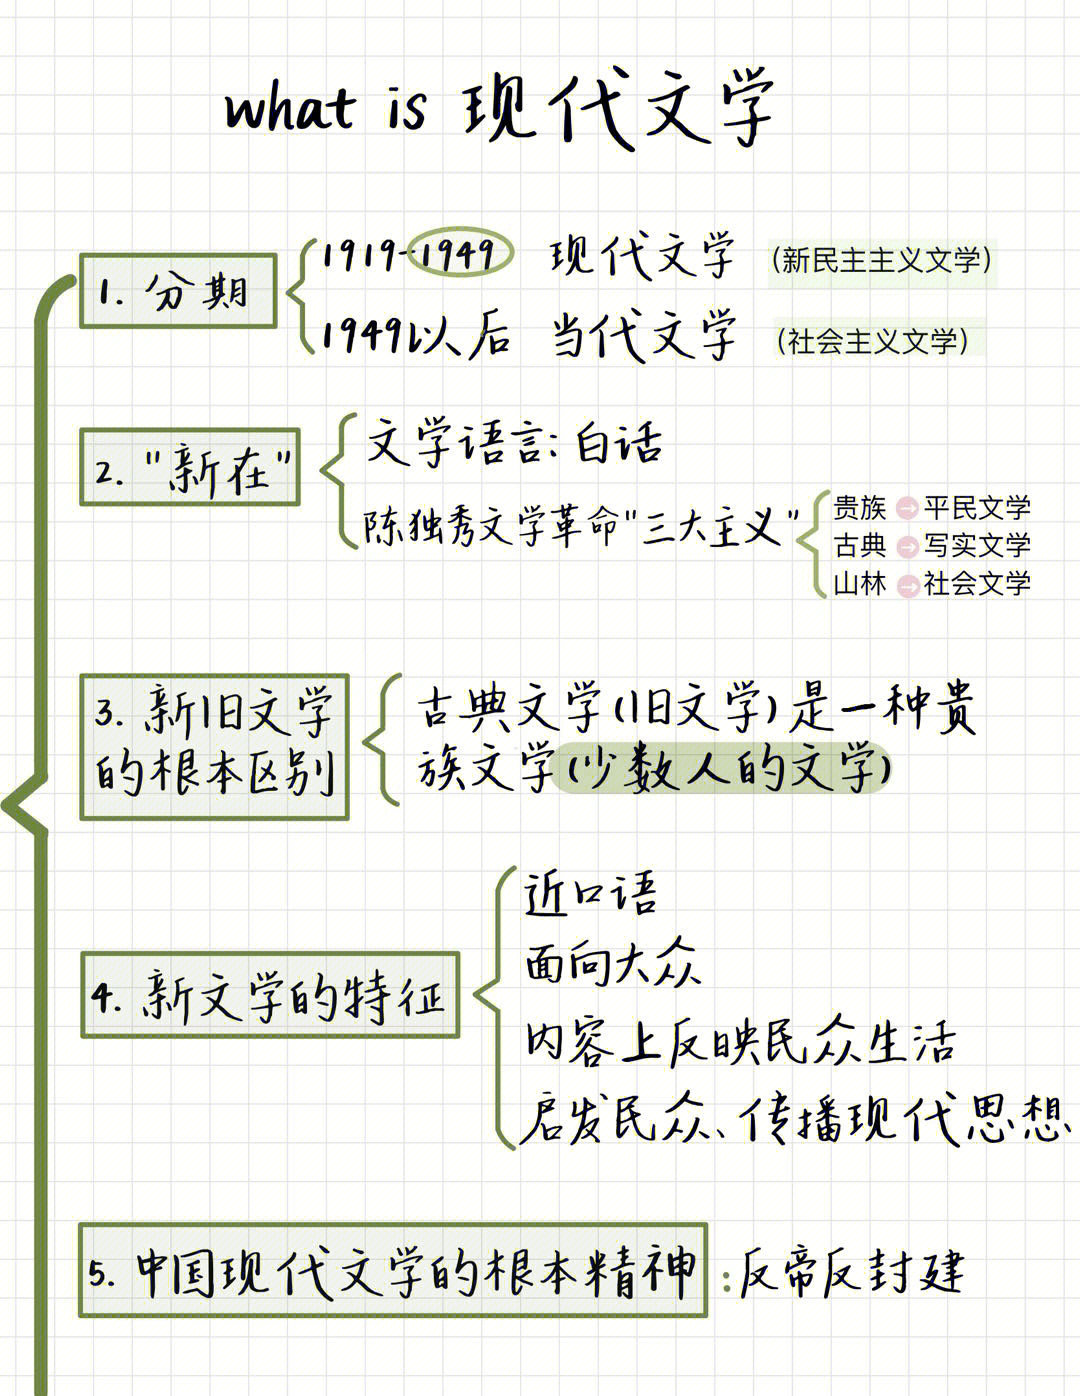 华东师大汉语言现代文学史笔记框架